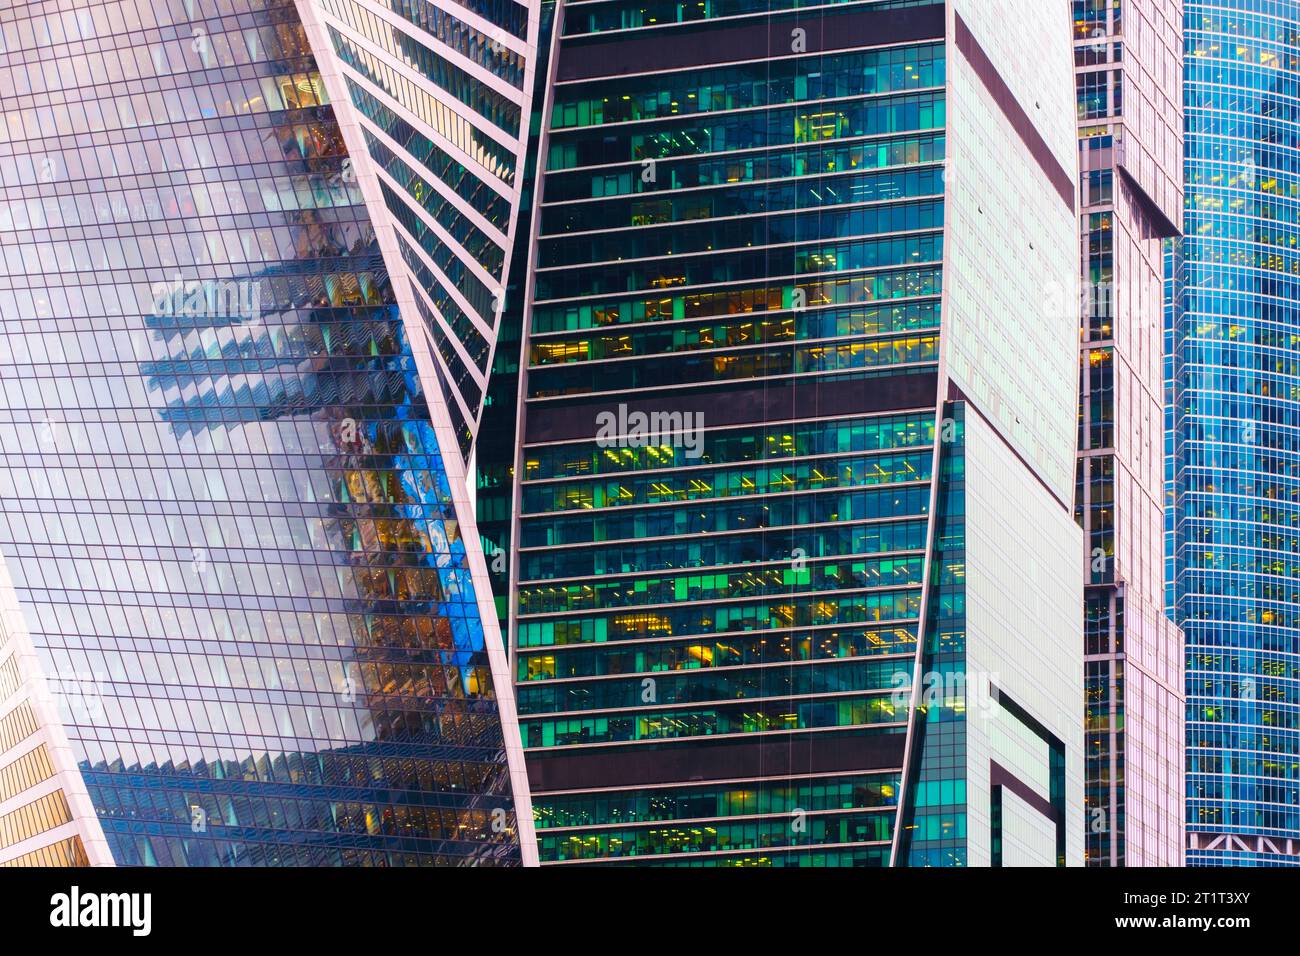 Bâtiments en verre avec fond de ciel bleu nuageux, gratte-ciel réfléchissants, immeubles de bureaux d'affaires. Banque D'Images